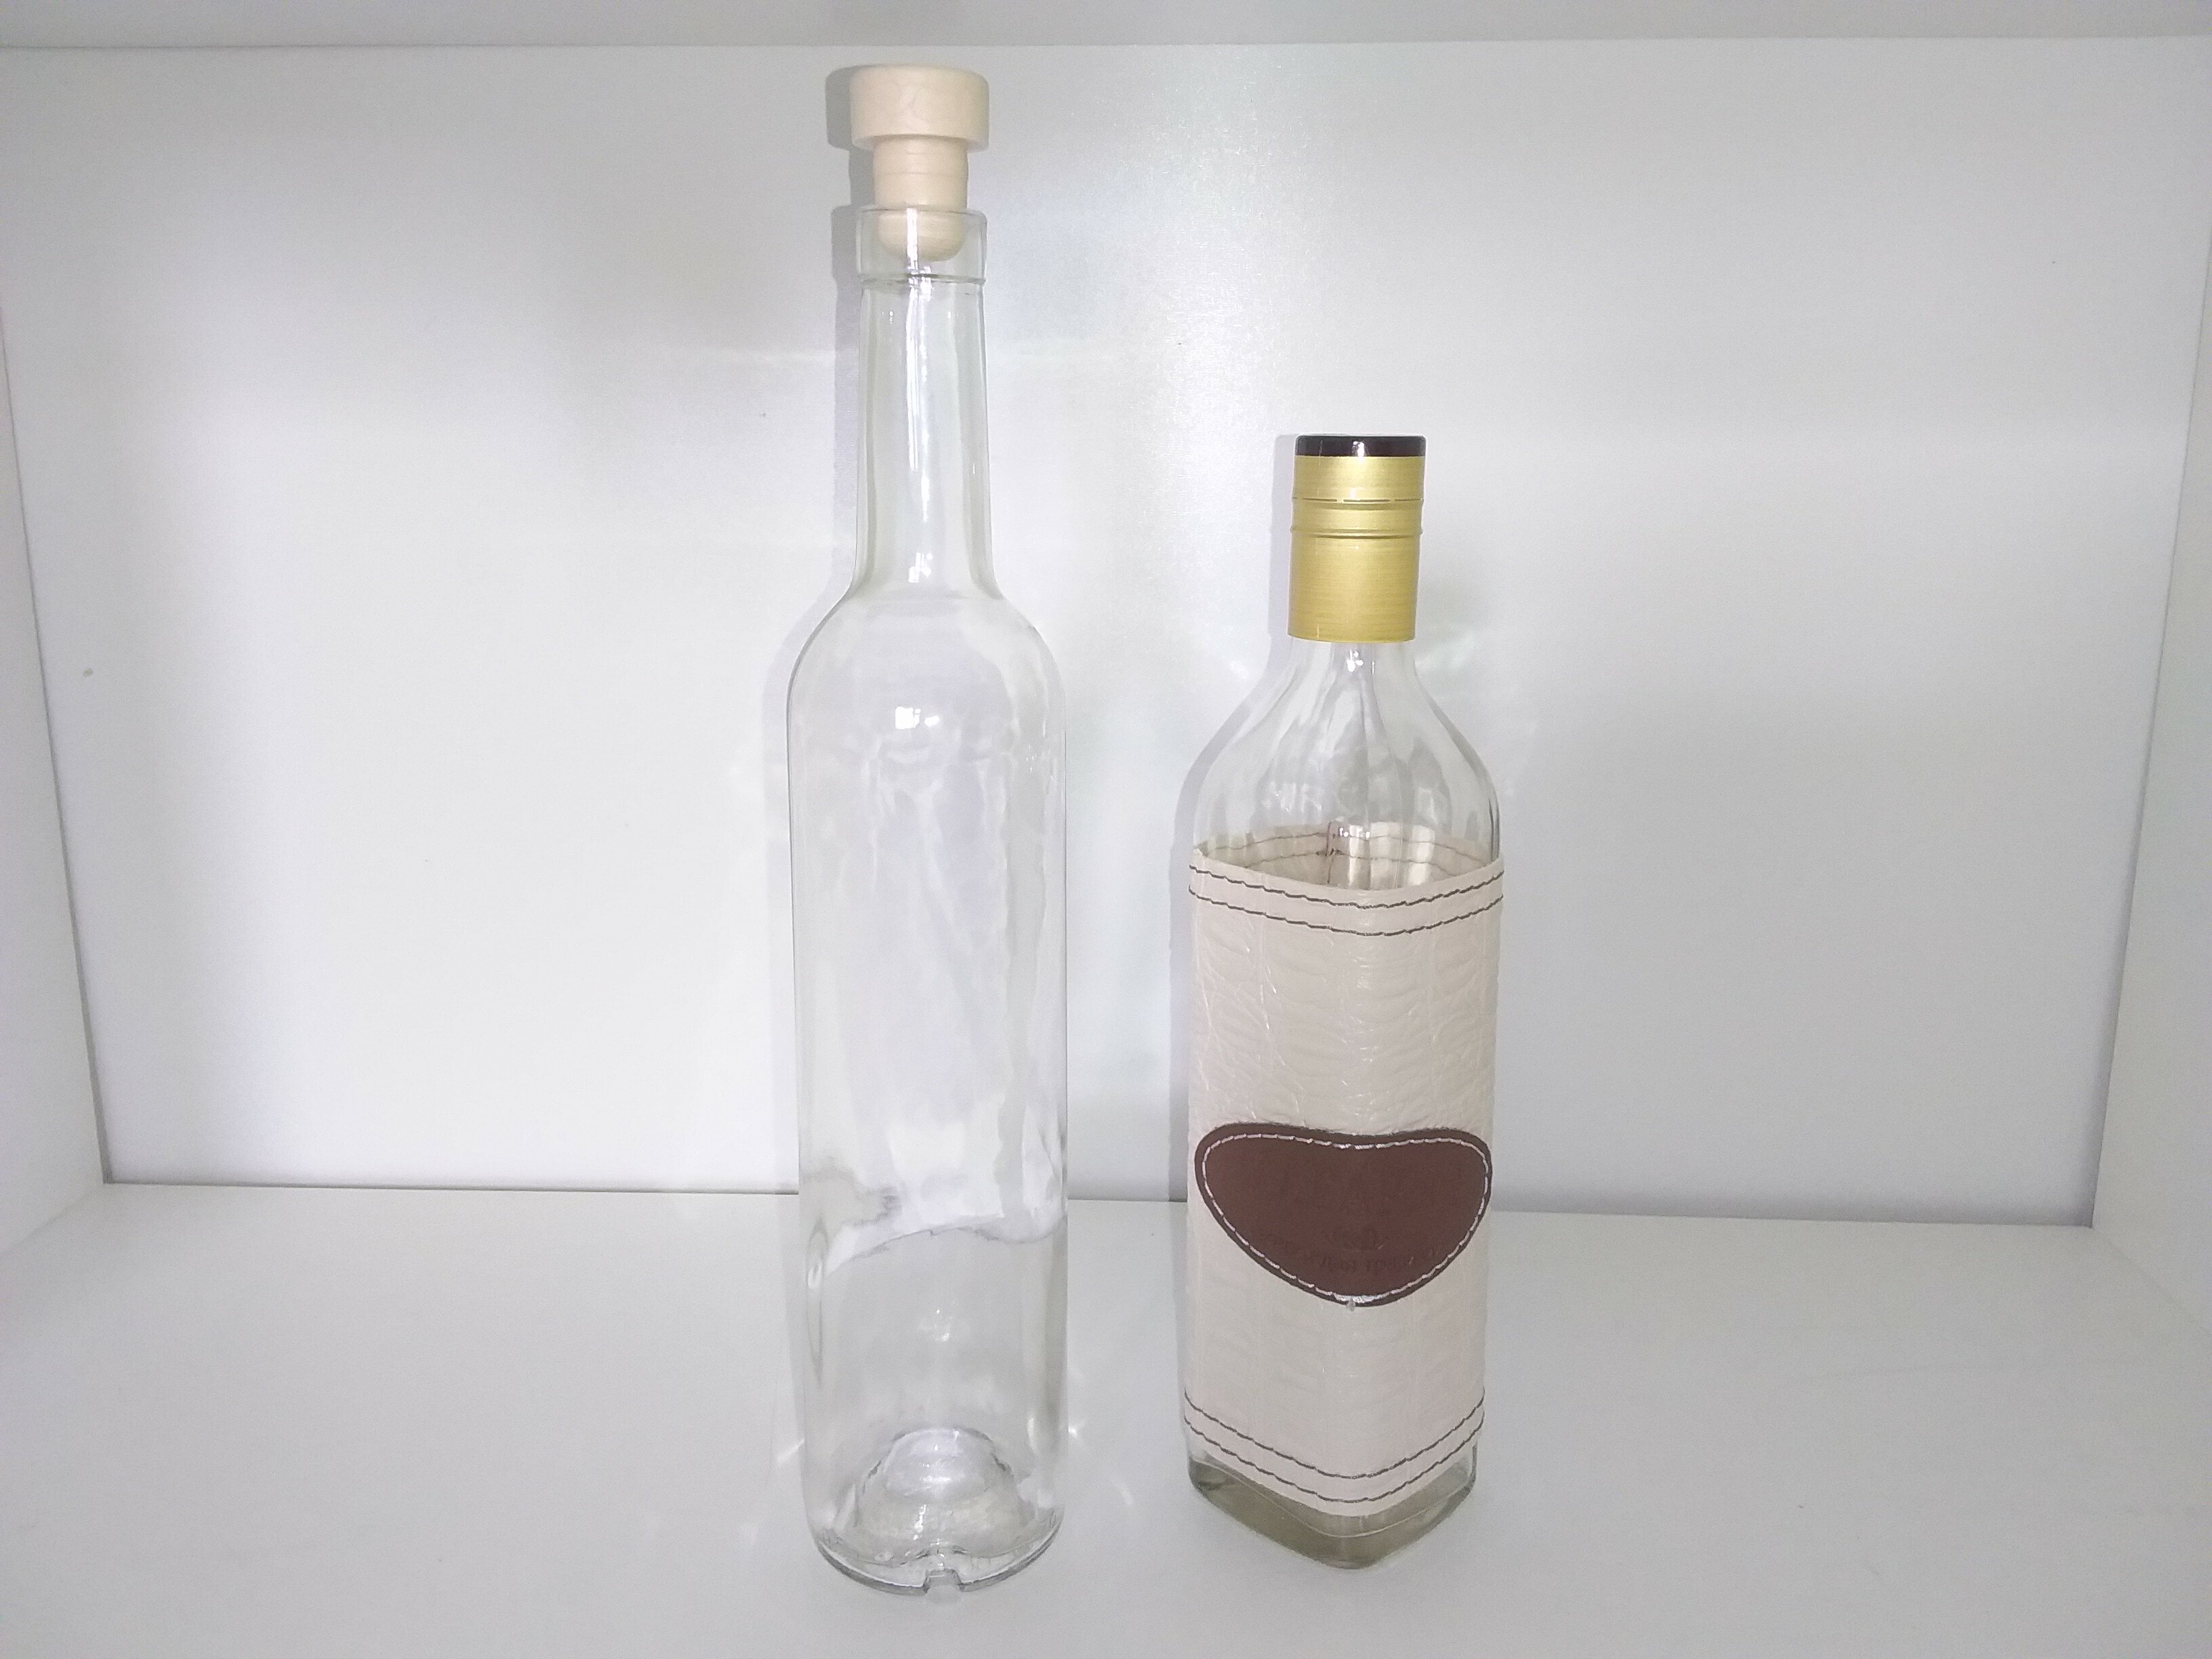 Бутылка коньячная 4 шт по 0,5 л и бутылка "Магарыч" 0,5 л 1 шт с пробками